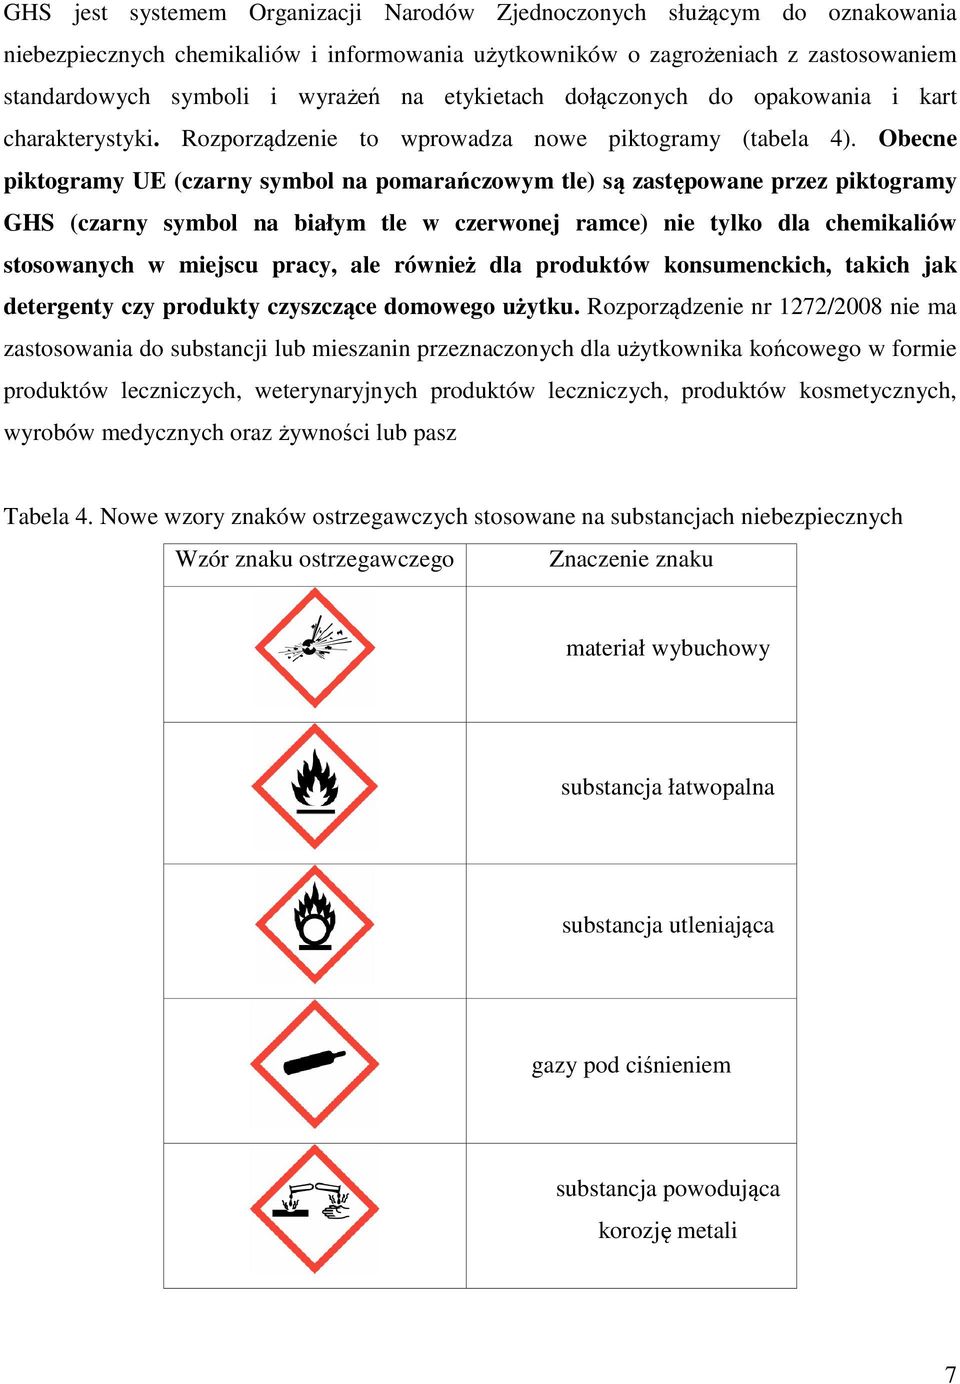 Obecne piktogramy UE (czarny symbol na pomarańczowym tle) są zastępowane przez piktogramy GHS (czarny symbol na białym tle w czerwonej ramce) nie tylko dla chemikaliów stosowanych w miejscu pracy,